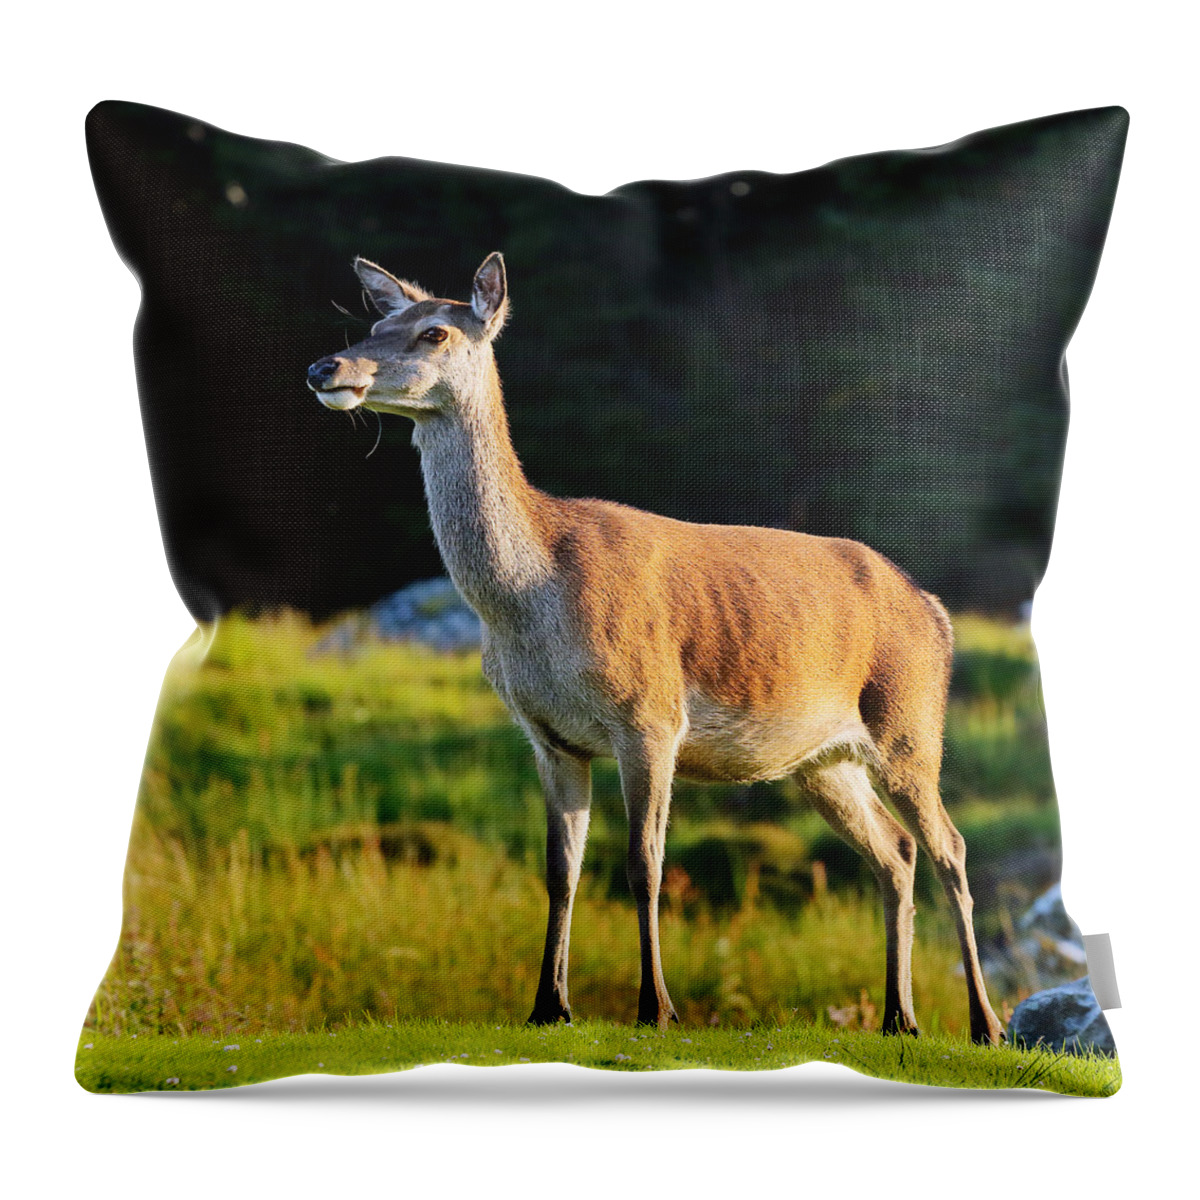 Deer Throw Pillow featuring the photograph Deer by Grant Glendinning